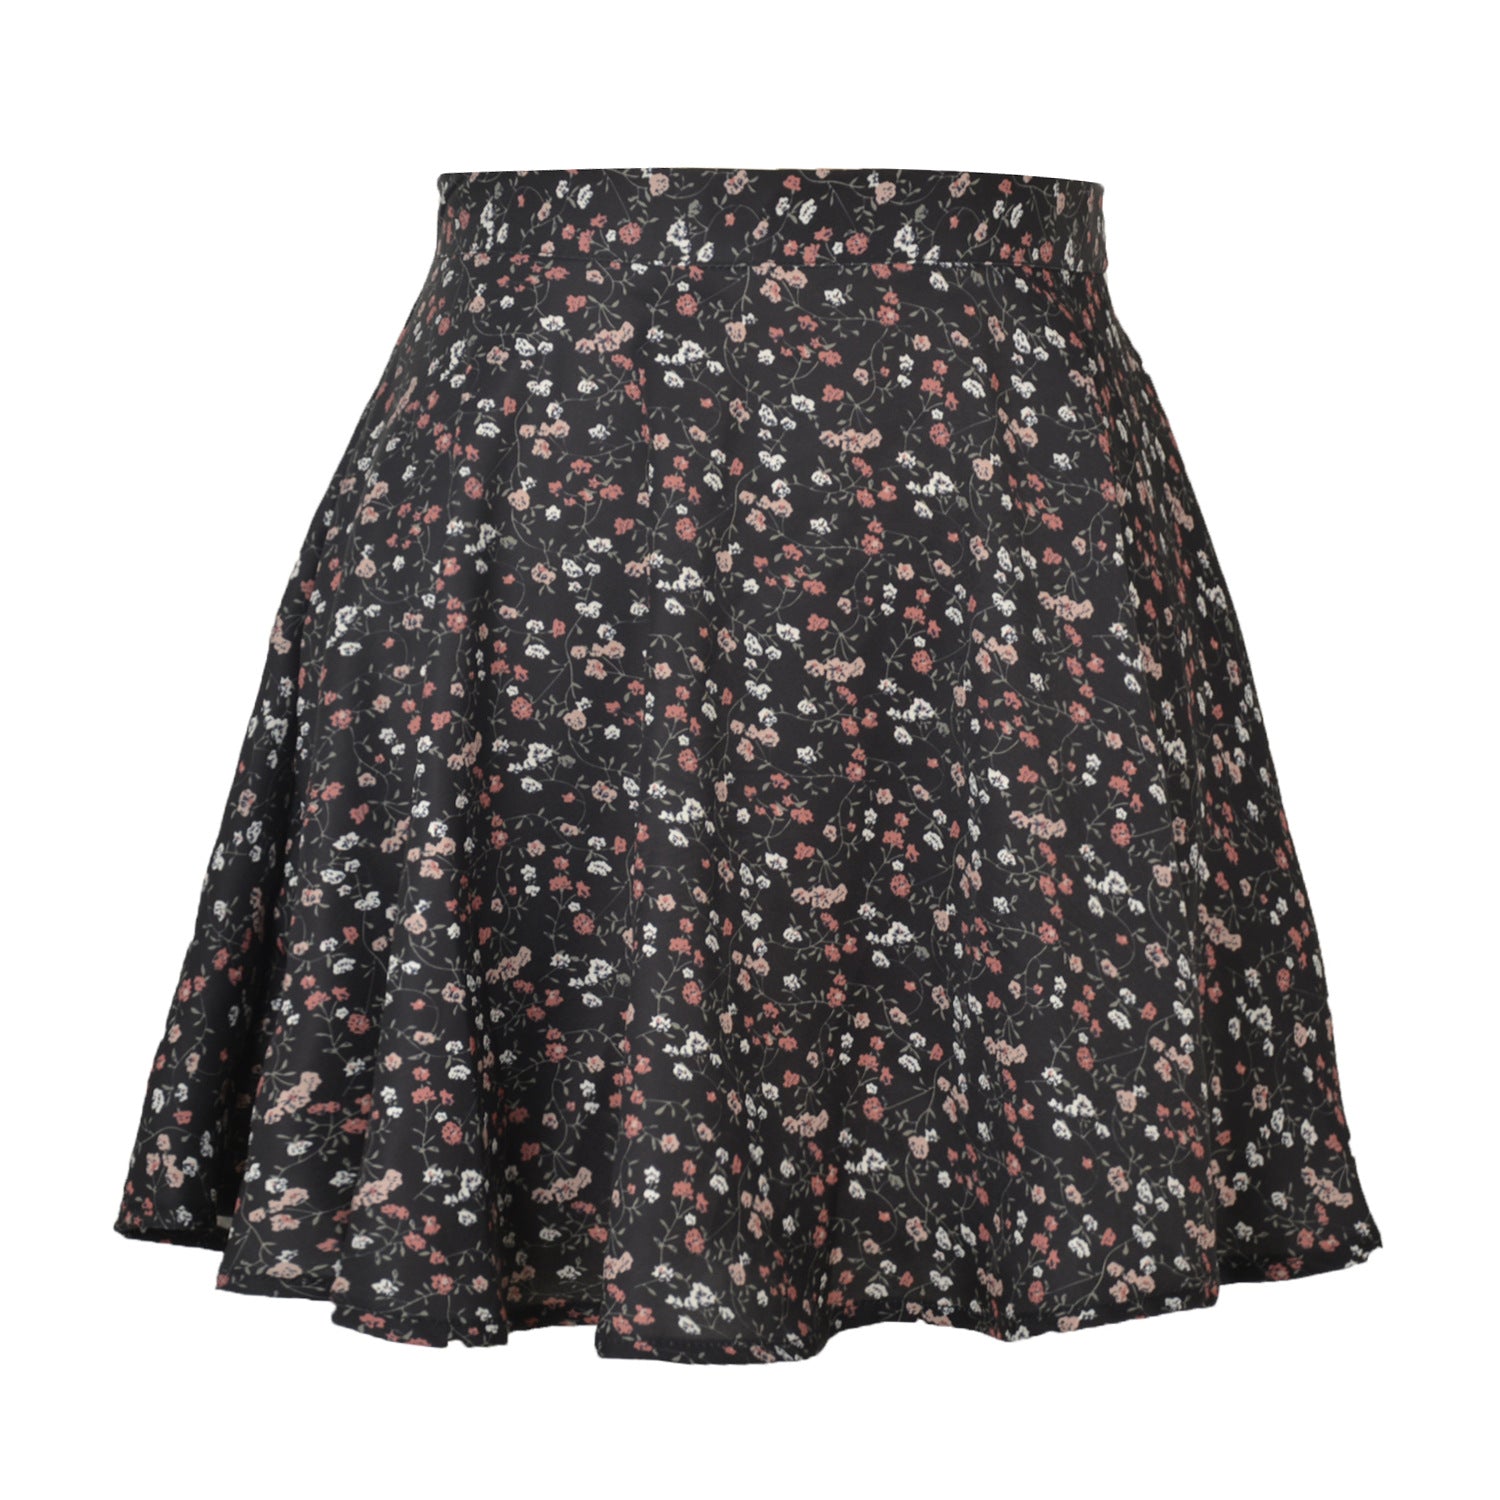 Women's Floral Sweet High Waist Invisible Zipper Chiffon Printed Short Skirt